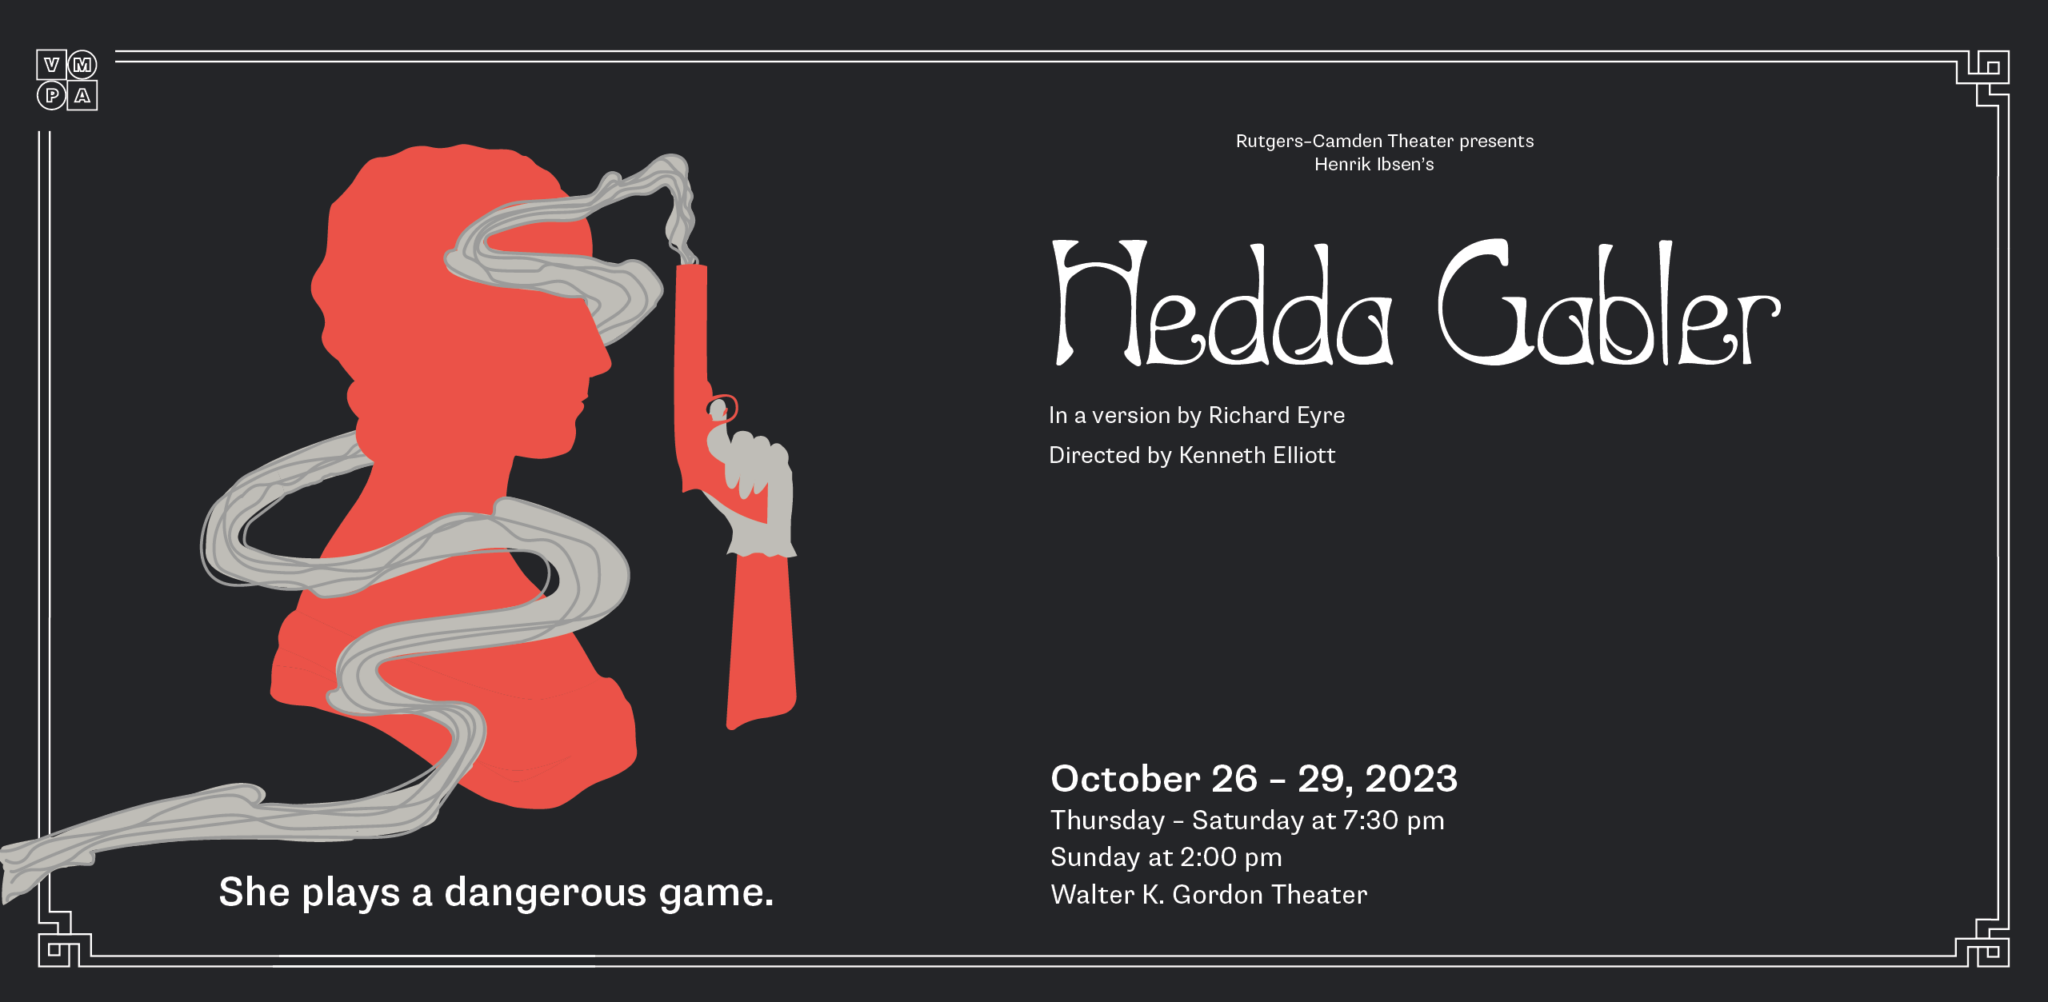 Rutgers–Camden Theater Presents: Hedda Gabler